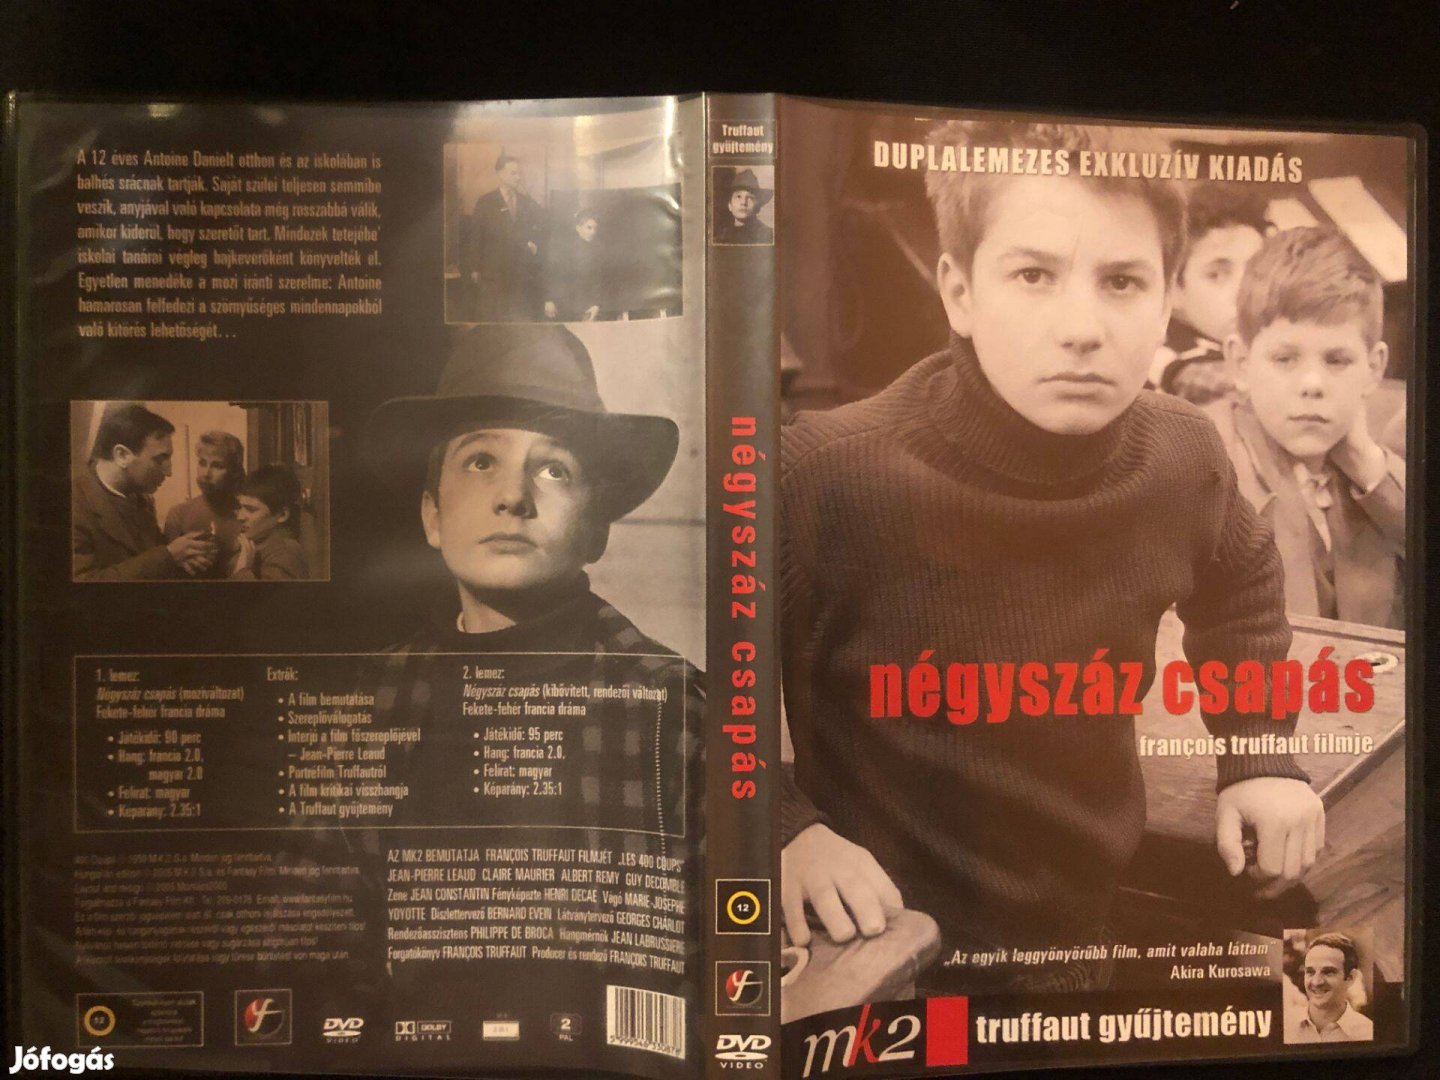 Négyszáz csapás DVD Francois Truffaut (duplalemezes exkluzív kiadás)